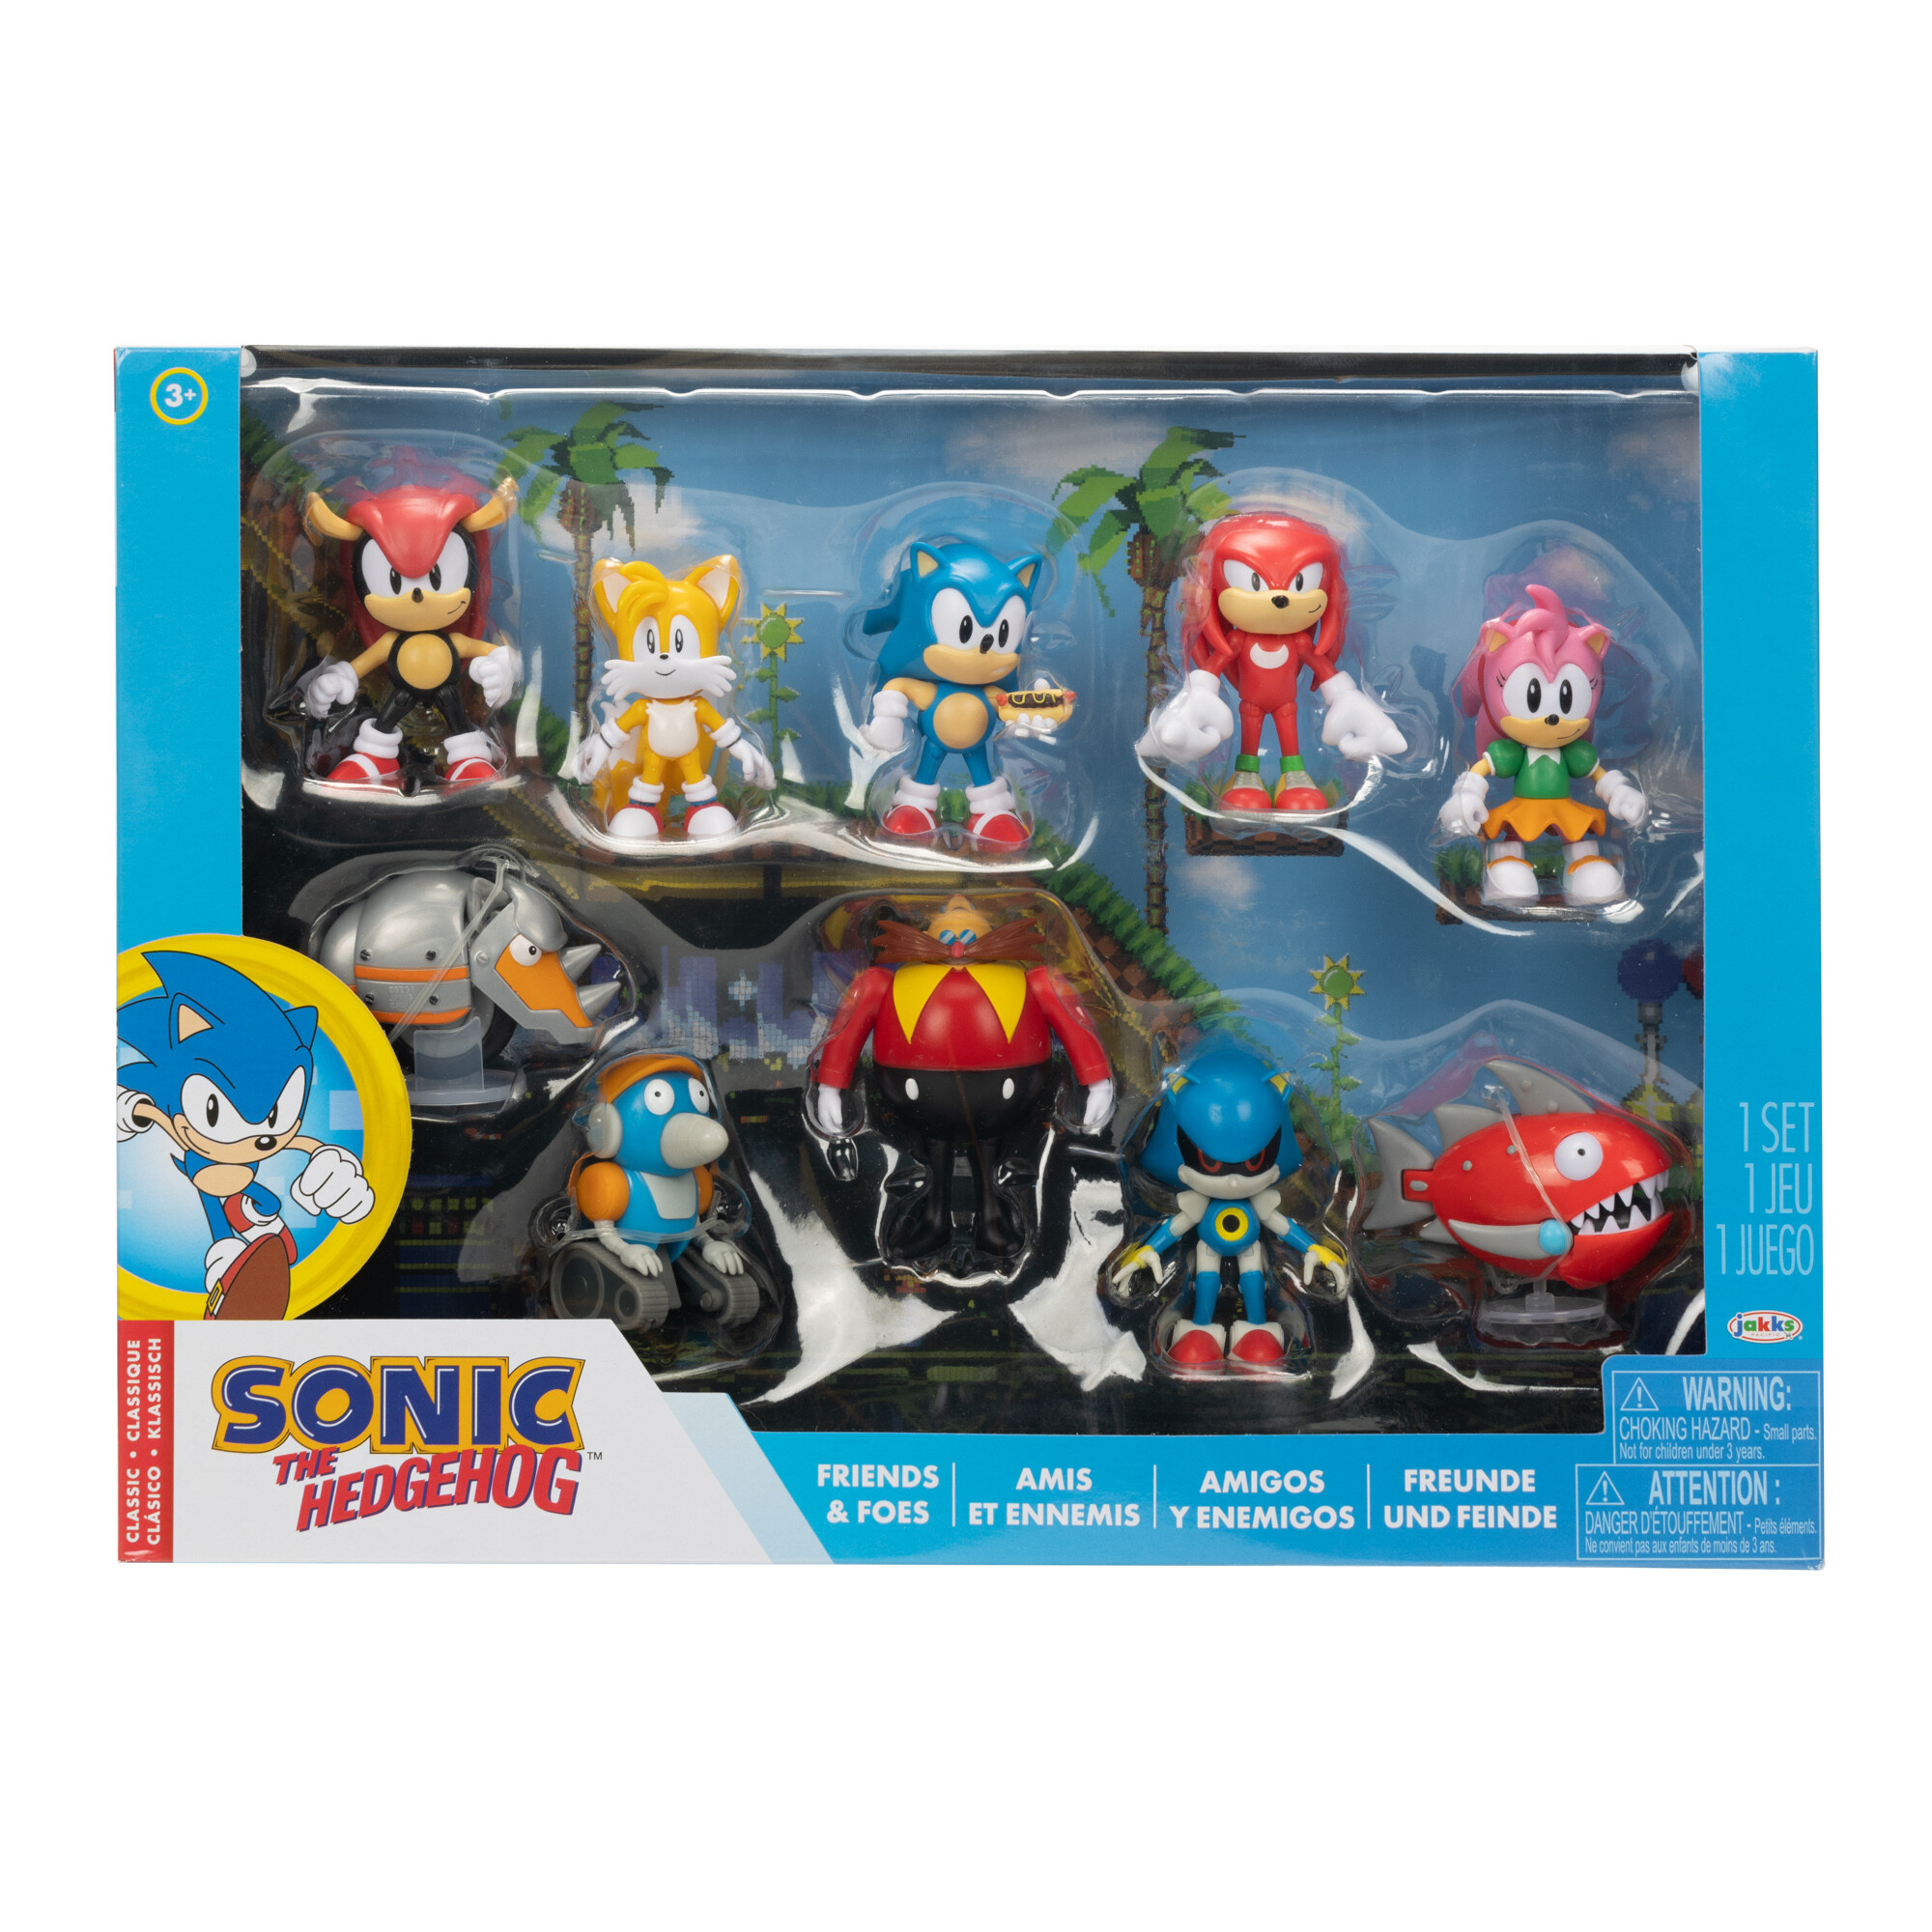 Sonic classic pack da 10 personaggi articolati estremamente dettagliati - Sonic